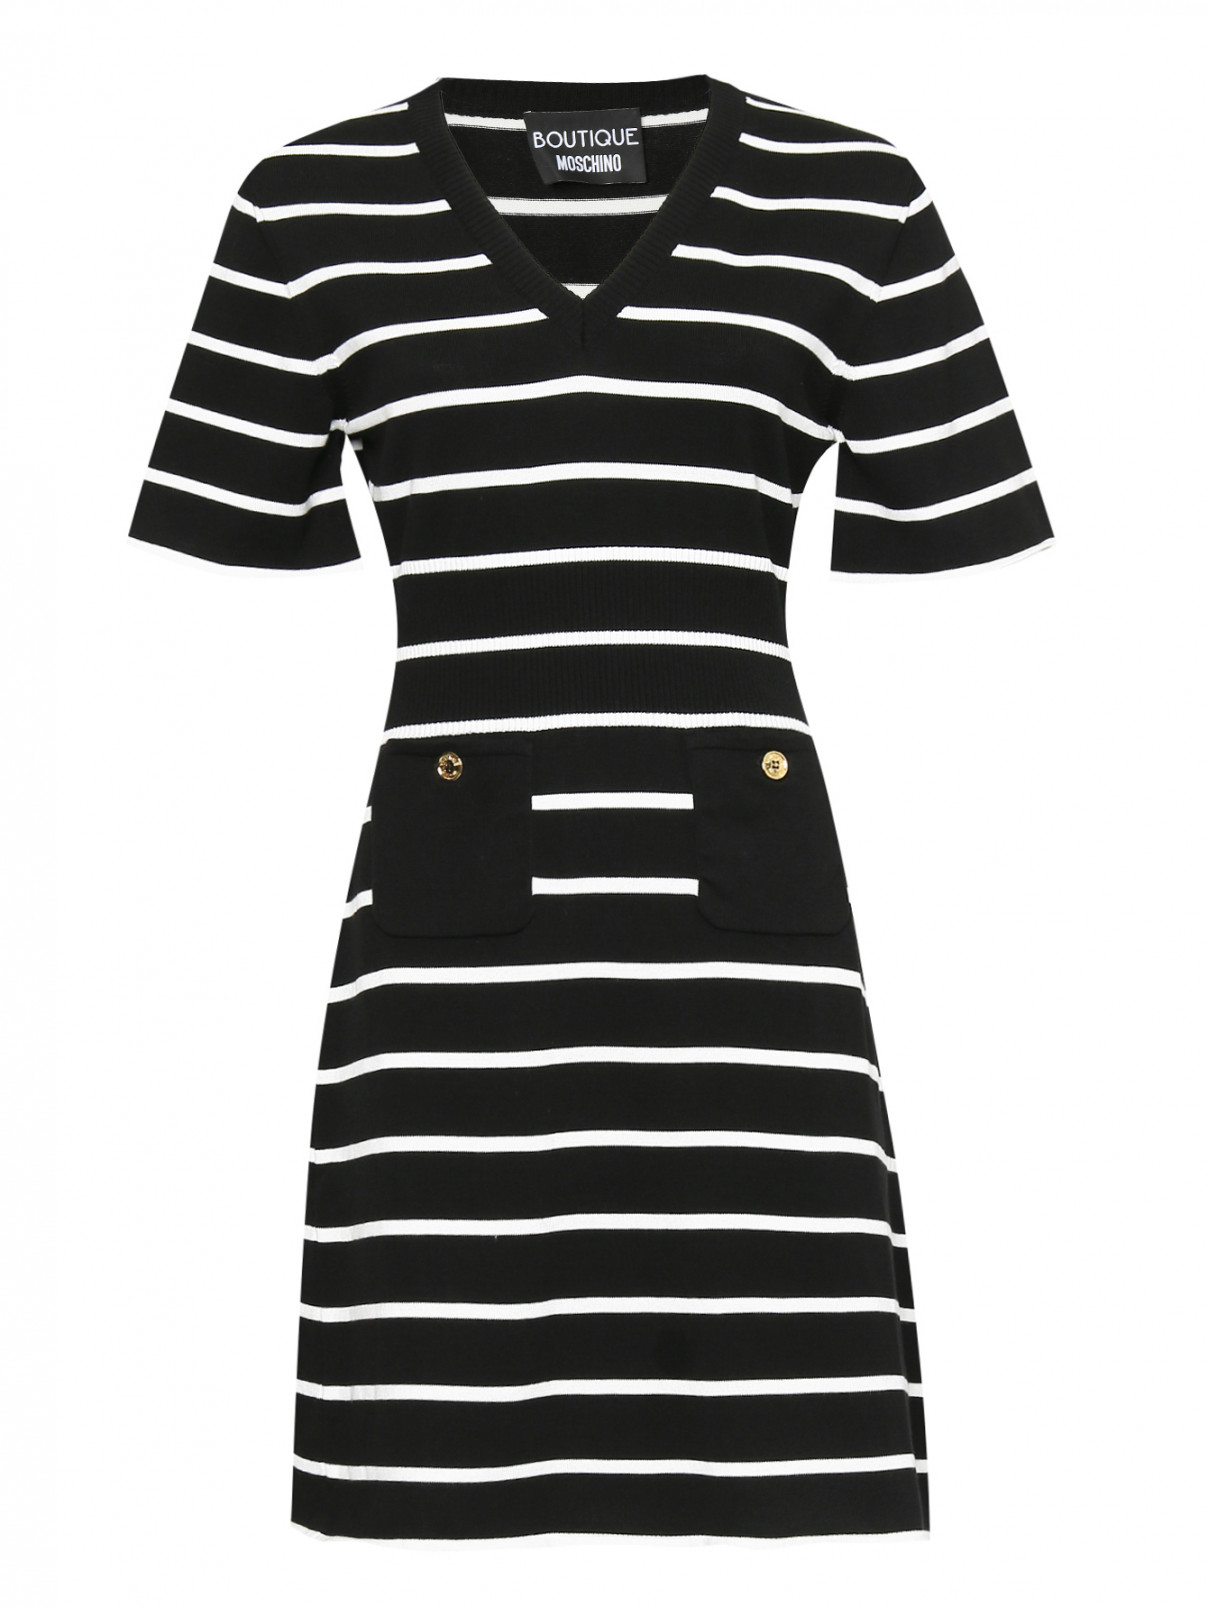 Платье из хлопка в полоску Moschino Boutique  –  Общий вид  – Цвет:  Черный